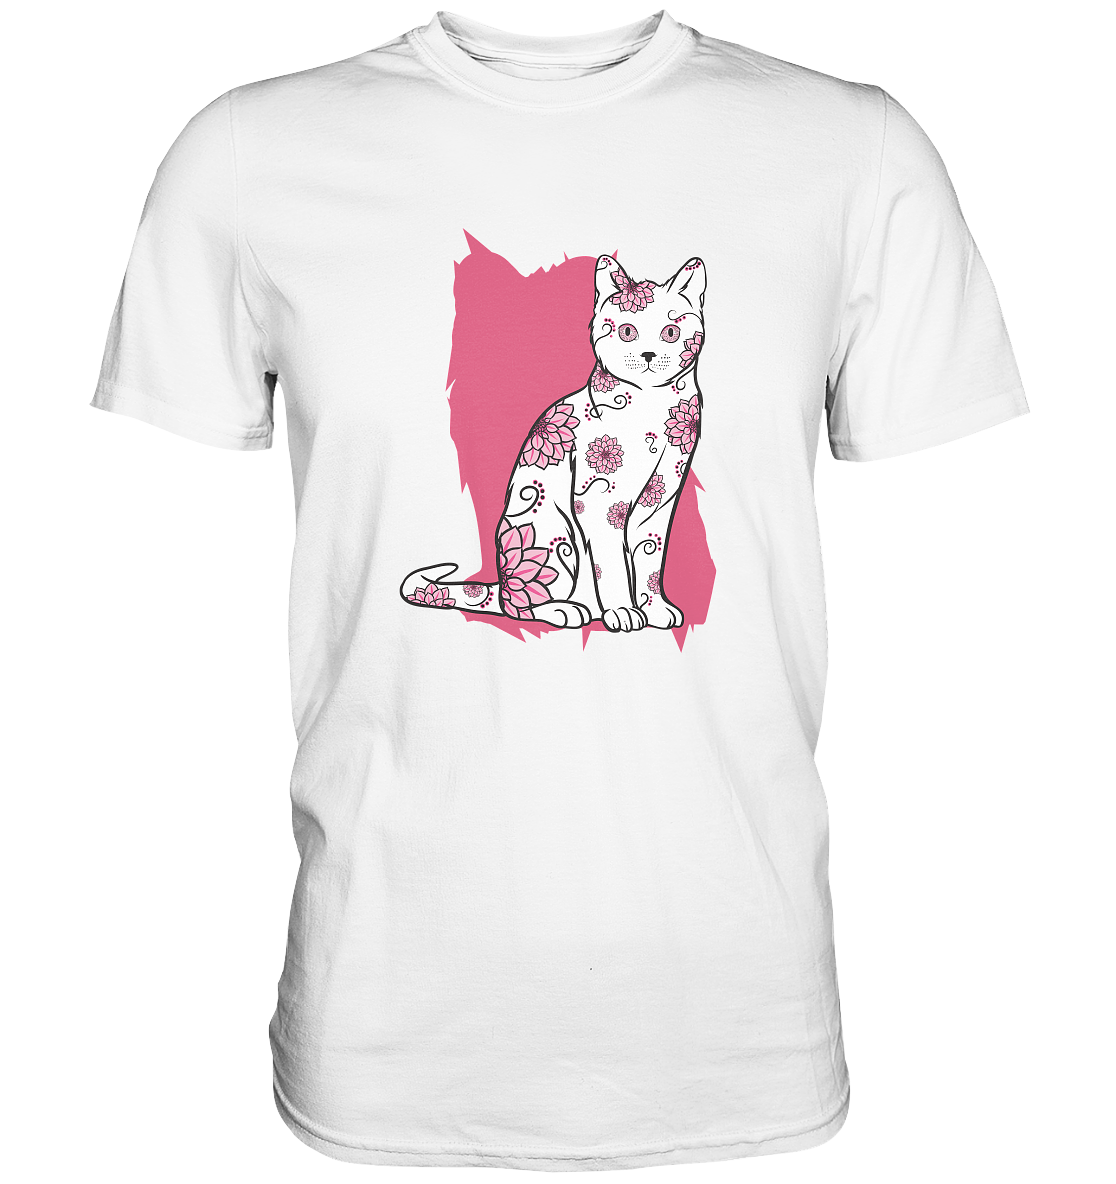 Flower Cat. Katze mit Blumen - Unisex Premium Shirt